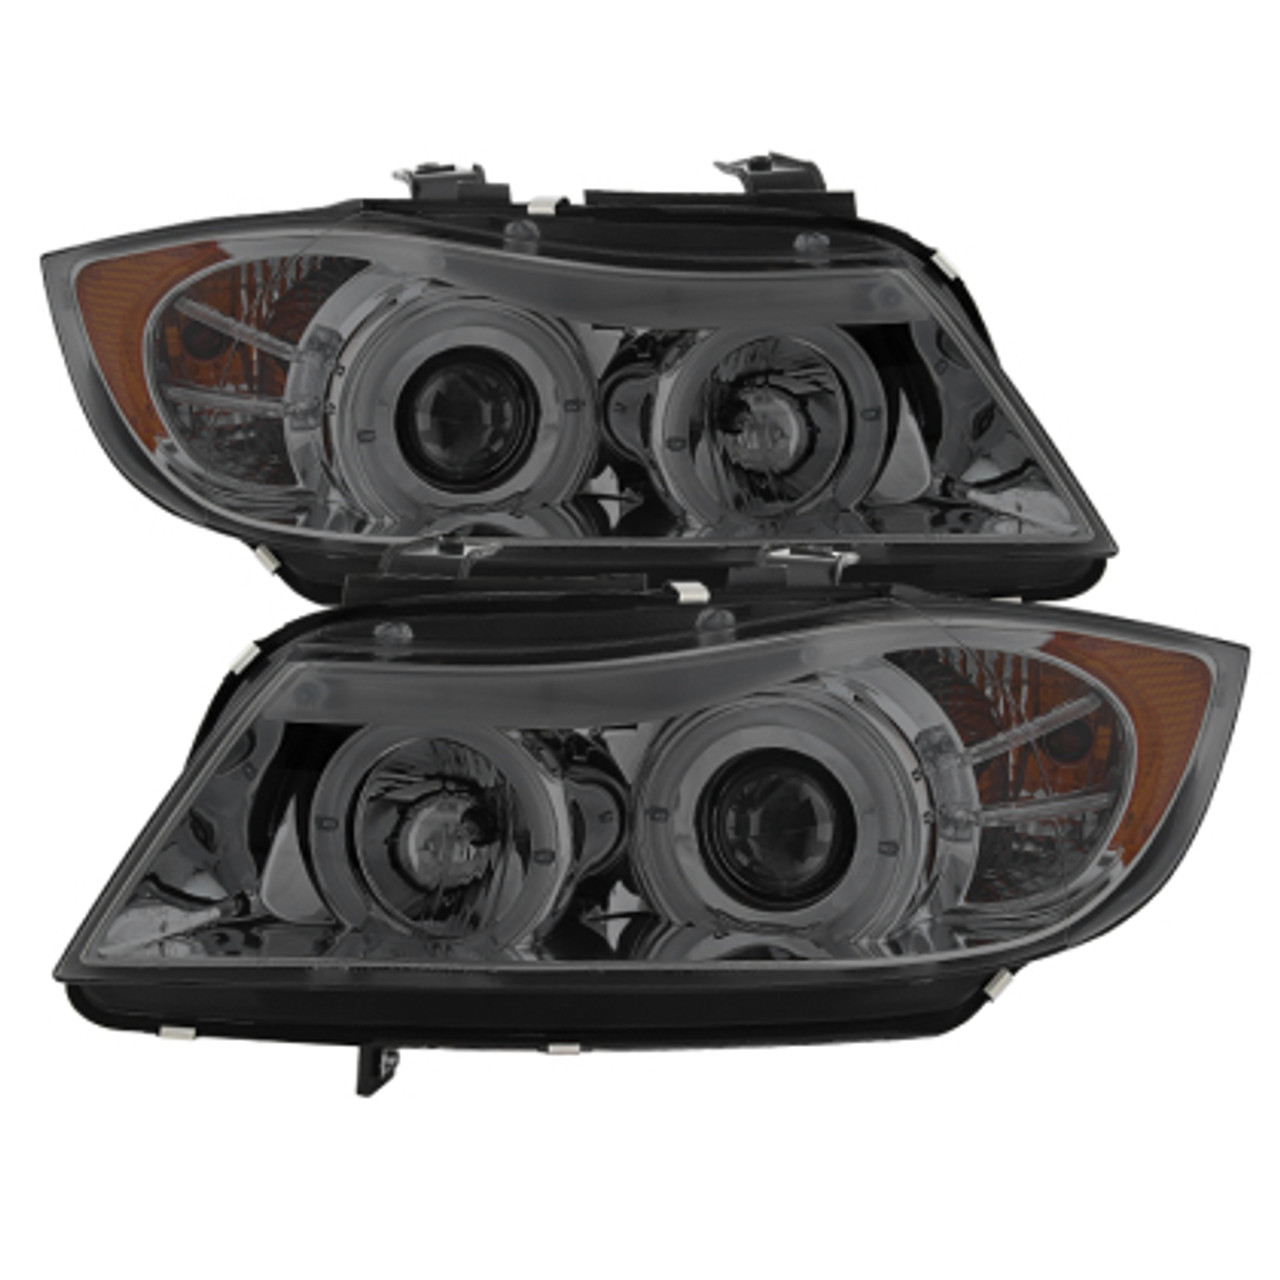 Spyder 2006-2008 BMW E90 Pre LCI Base Projector Headlights W/ LED Angel Eyes (Halos) (5009029)